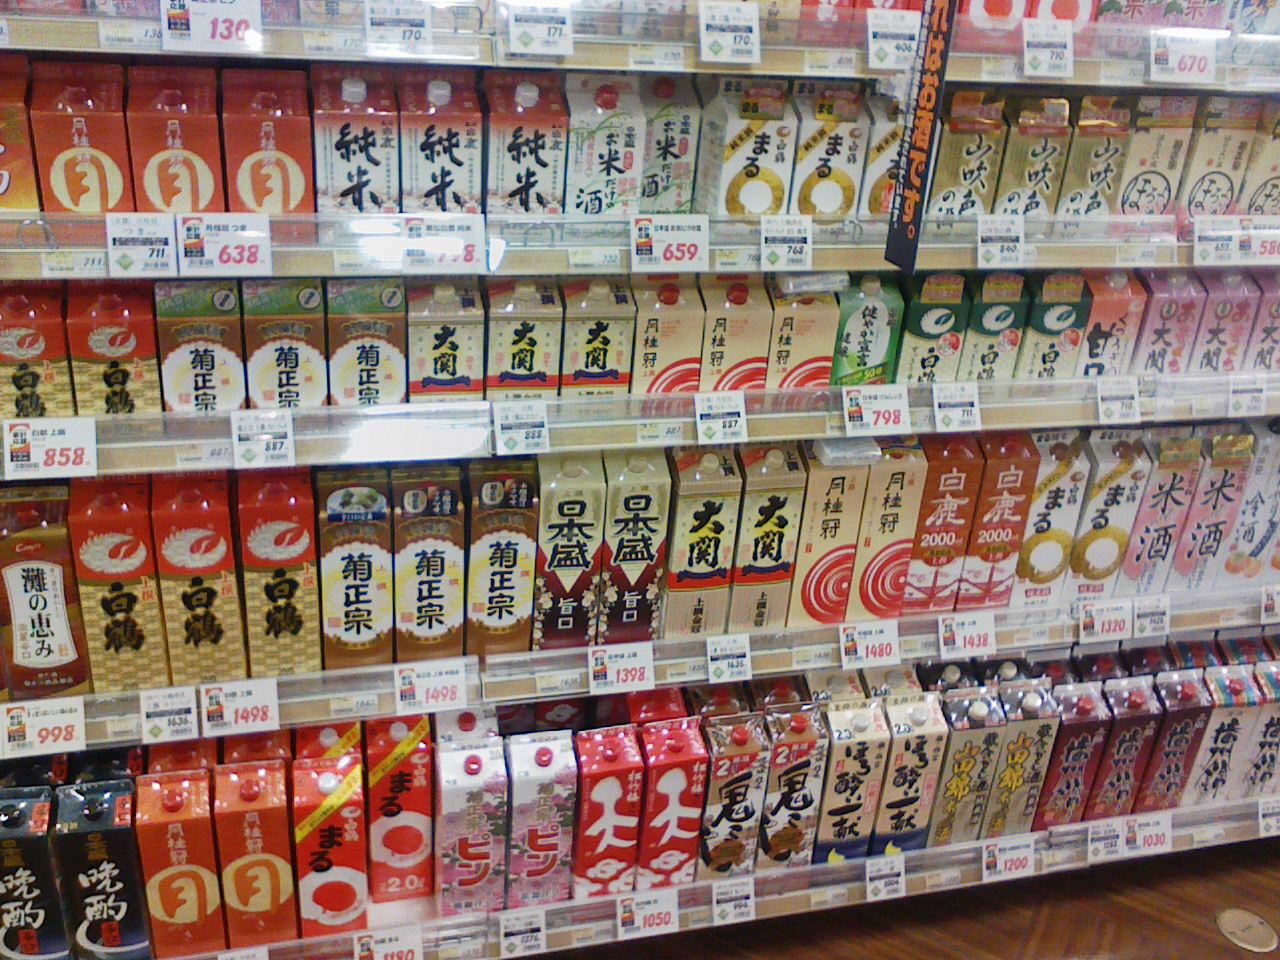 にじり寄る 紙パック酒 の脅威 なんとか なんとか 食い止めねば日本の文化が危うい 立ち呑み漂流